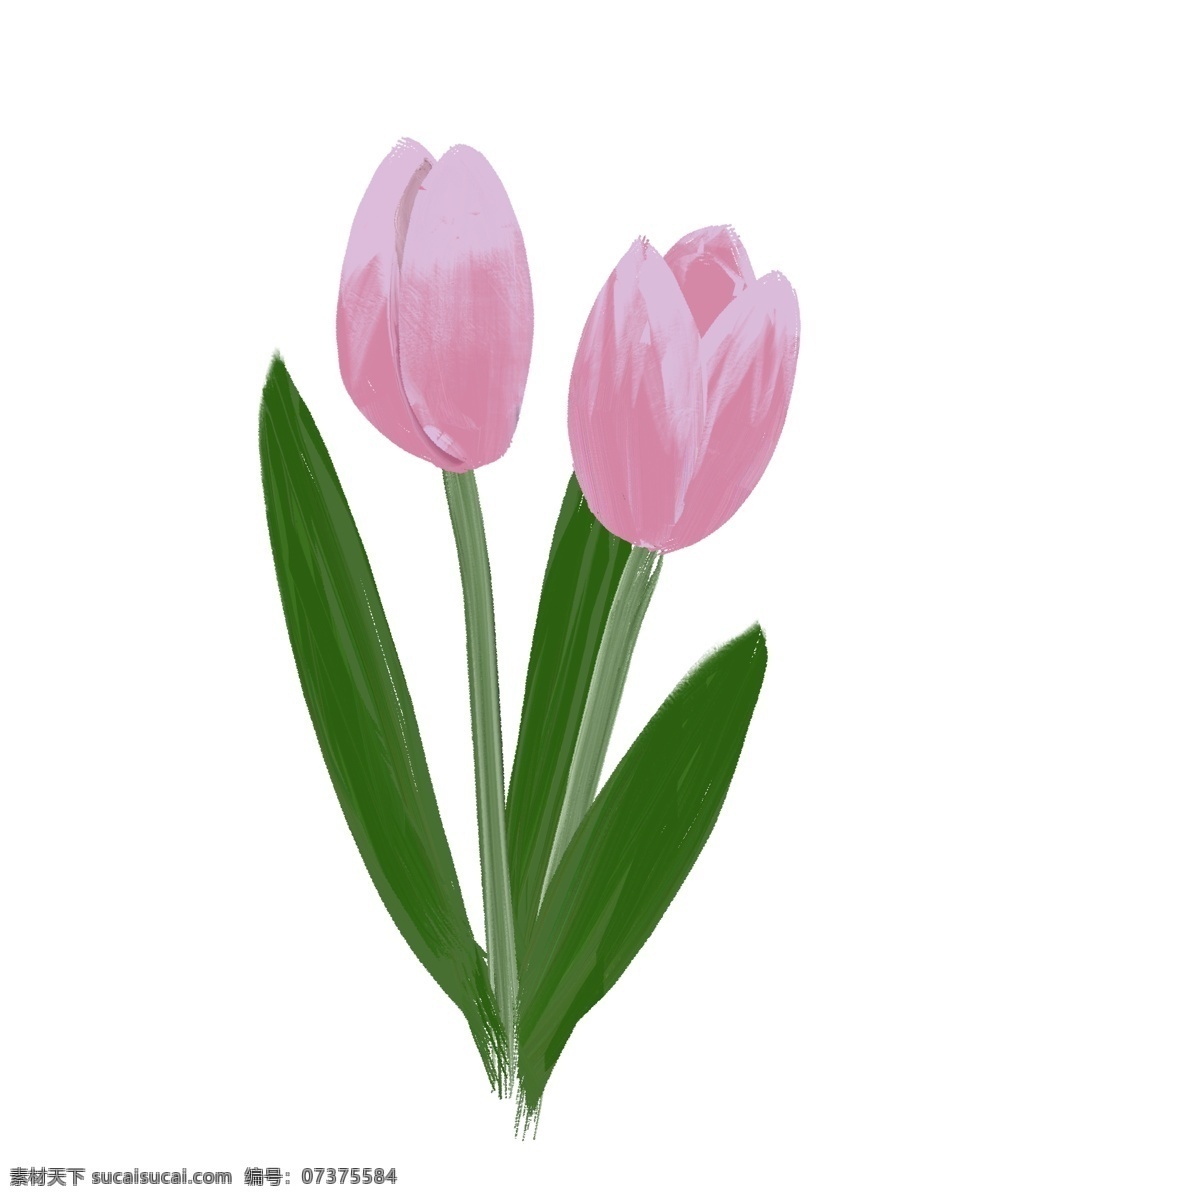 欧式 油画 花朵 花卉 风 郁金香 欧风 油画风 花 植物 手绘 免扣 可商用 粉色 绿叶 叶子 叶 花草